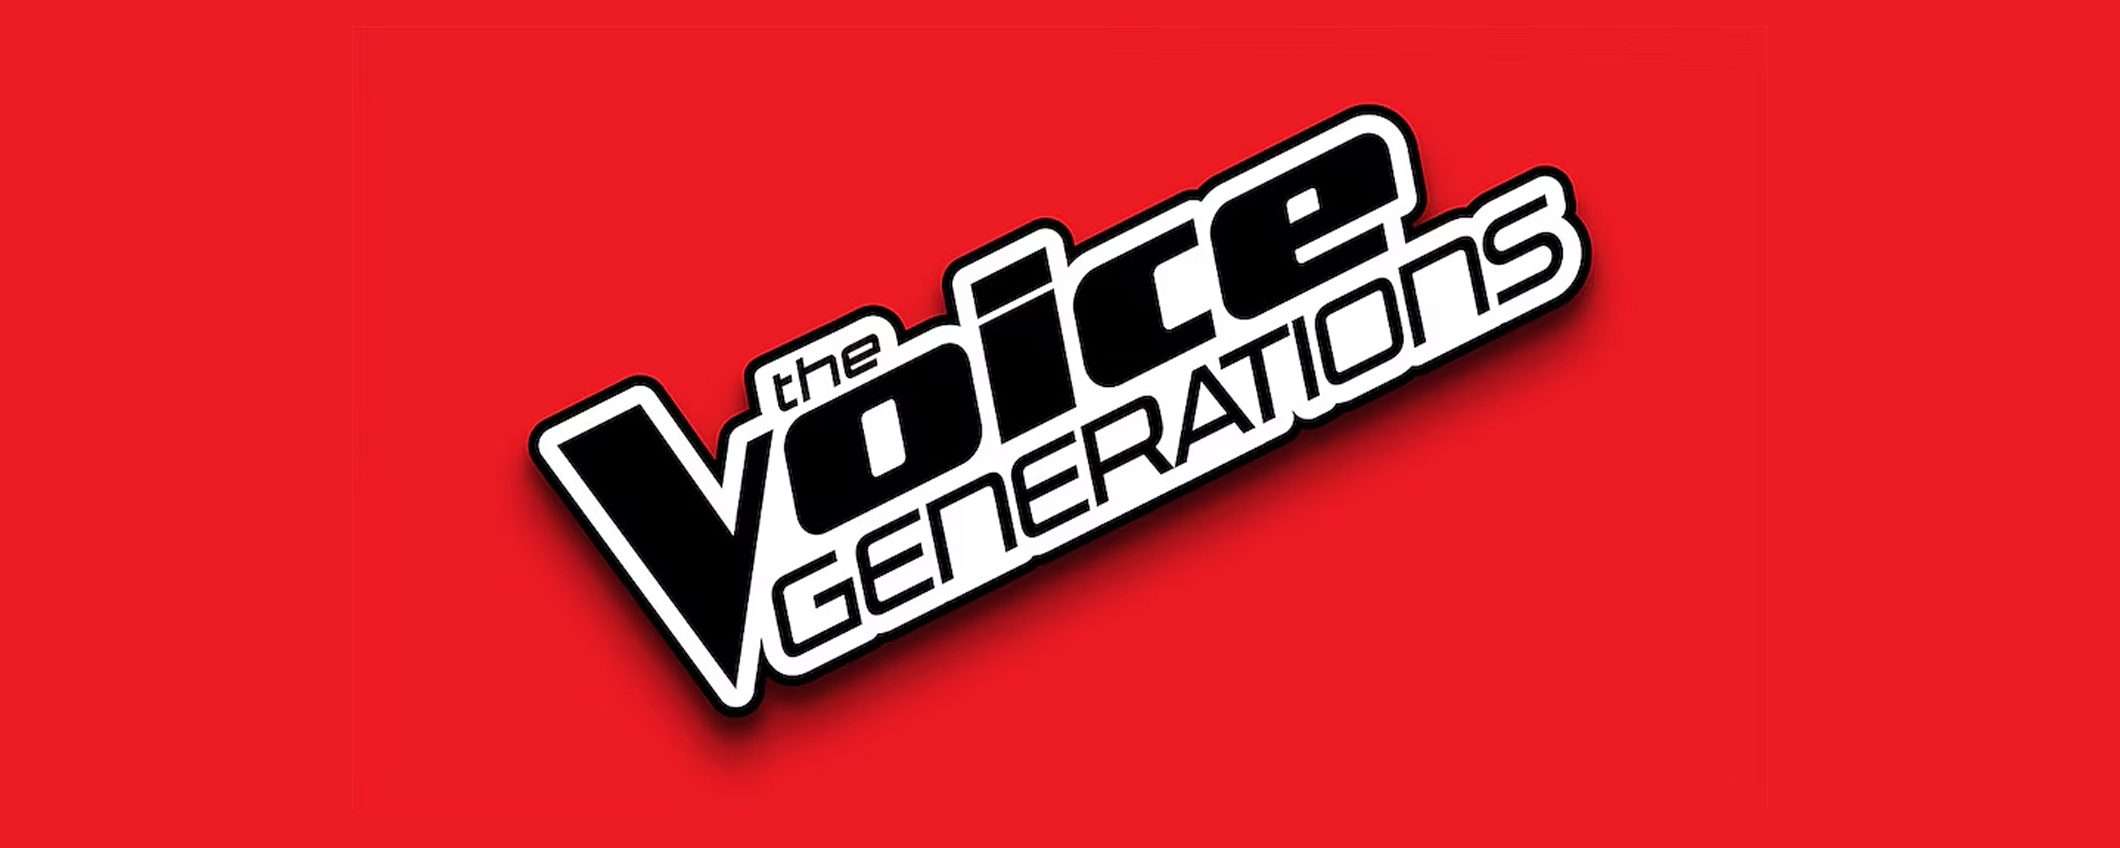 Come vedere The Voice Generations in diretta streaming dall'estero